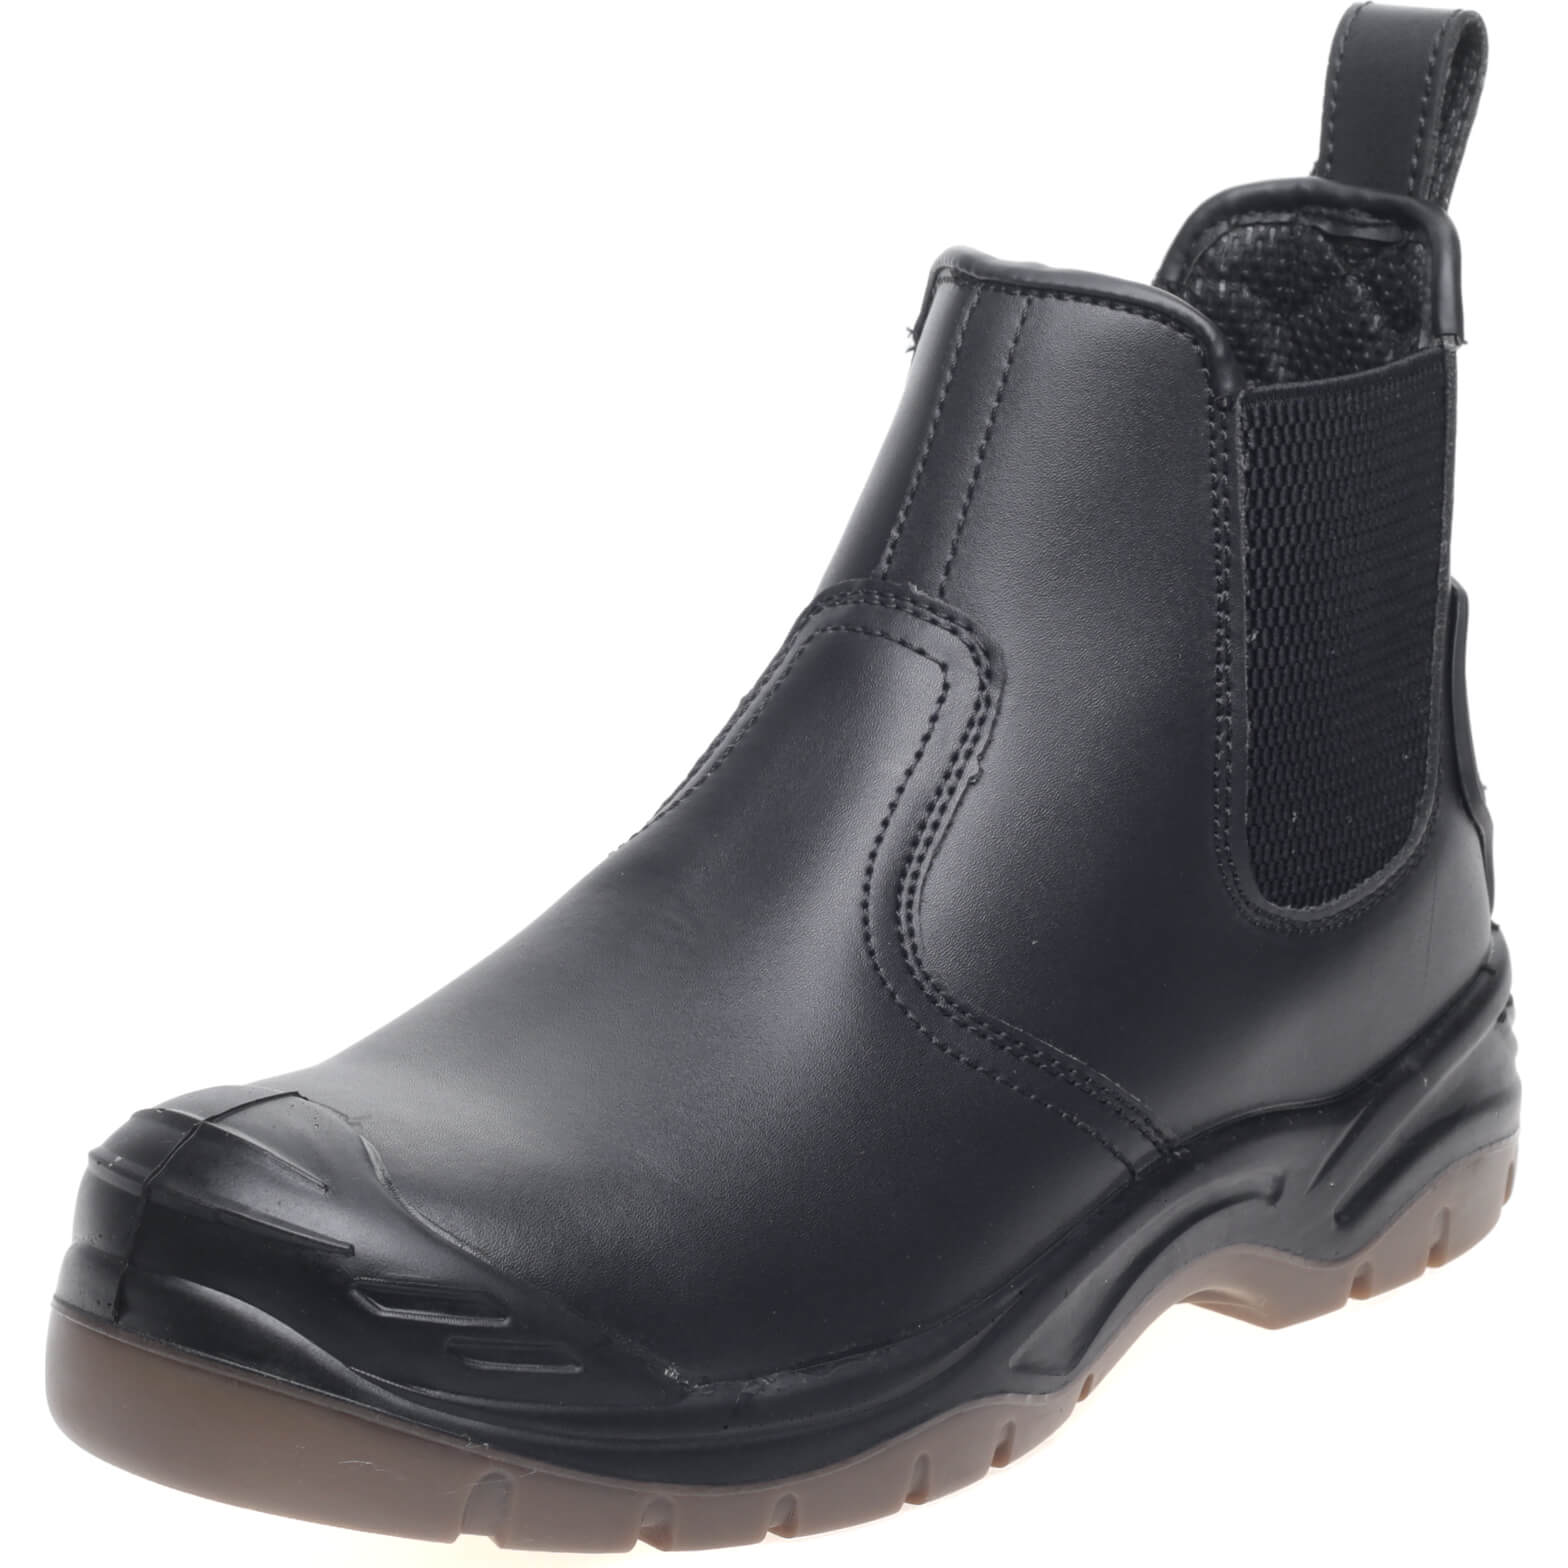 Apache AP71 Safety Dealer Boots Black Size 12